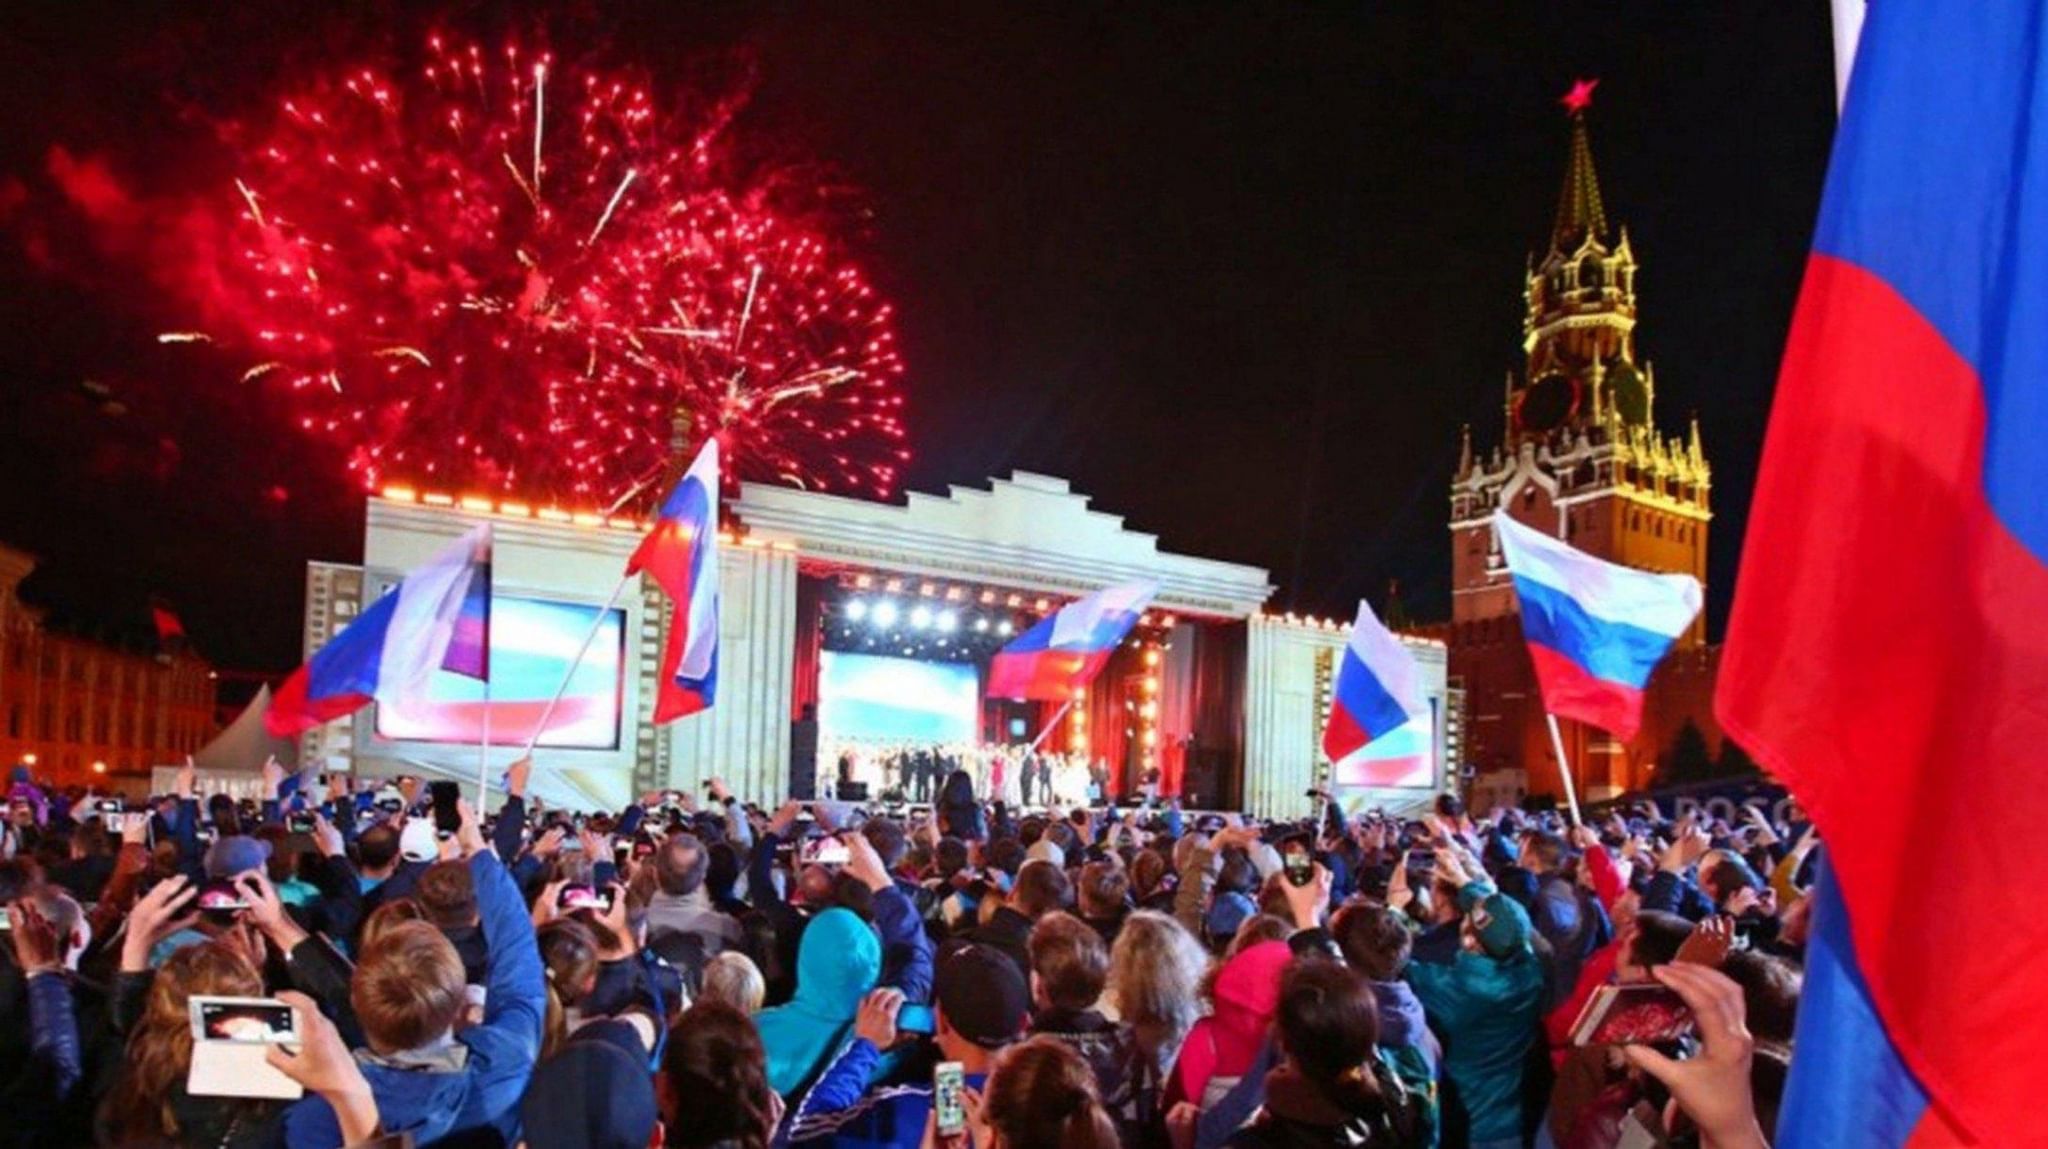 12 июня 2019 г. Празднование дня Росси. День России празднование. День независимости России. День независимости праздник в России.